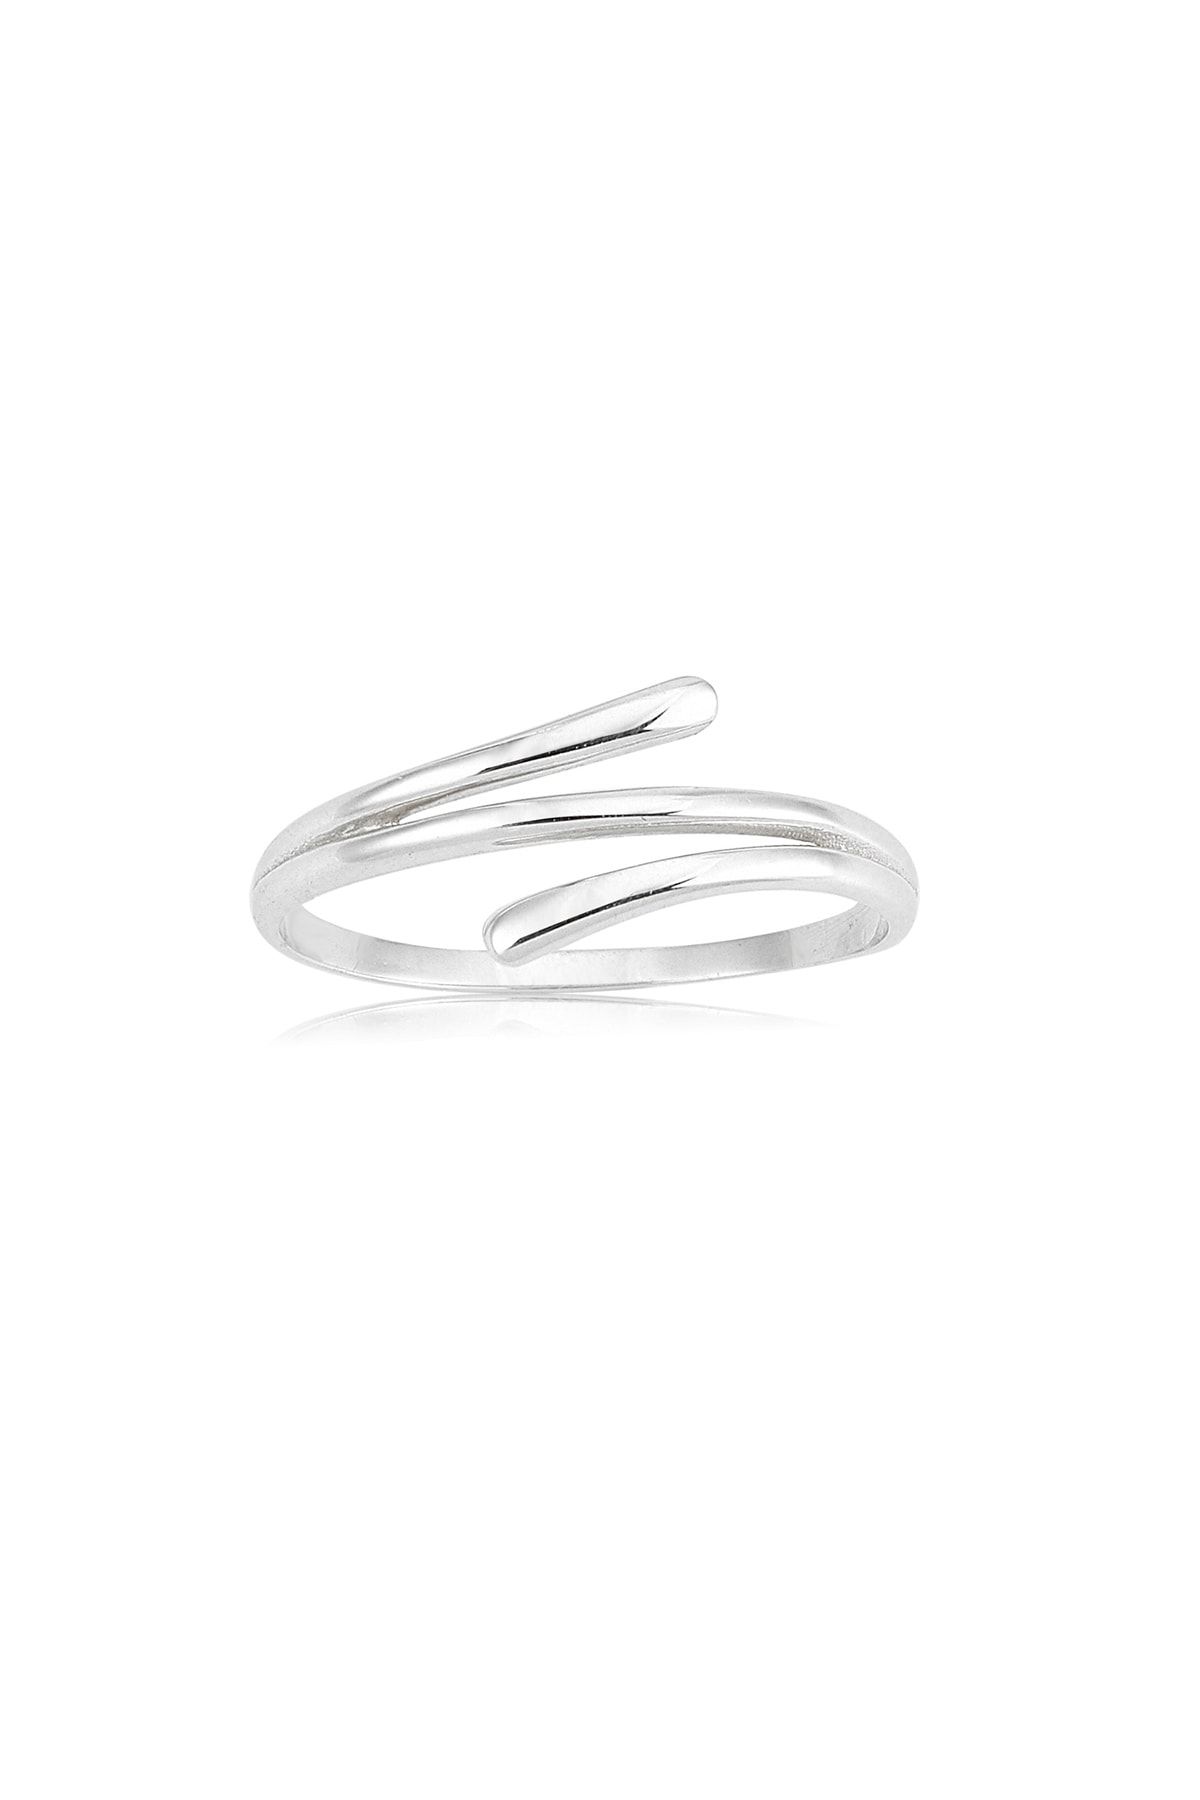 FasekGold Sarmal Taşsız 14 Ayar Minimal Tasarım Altın Eklem Yüzüğü-minimal Altın Yüzük-hediye Altın Yüzük